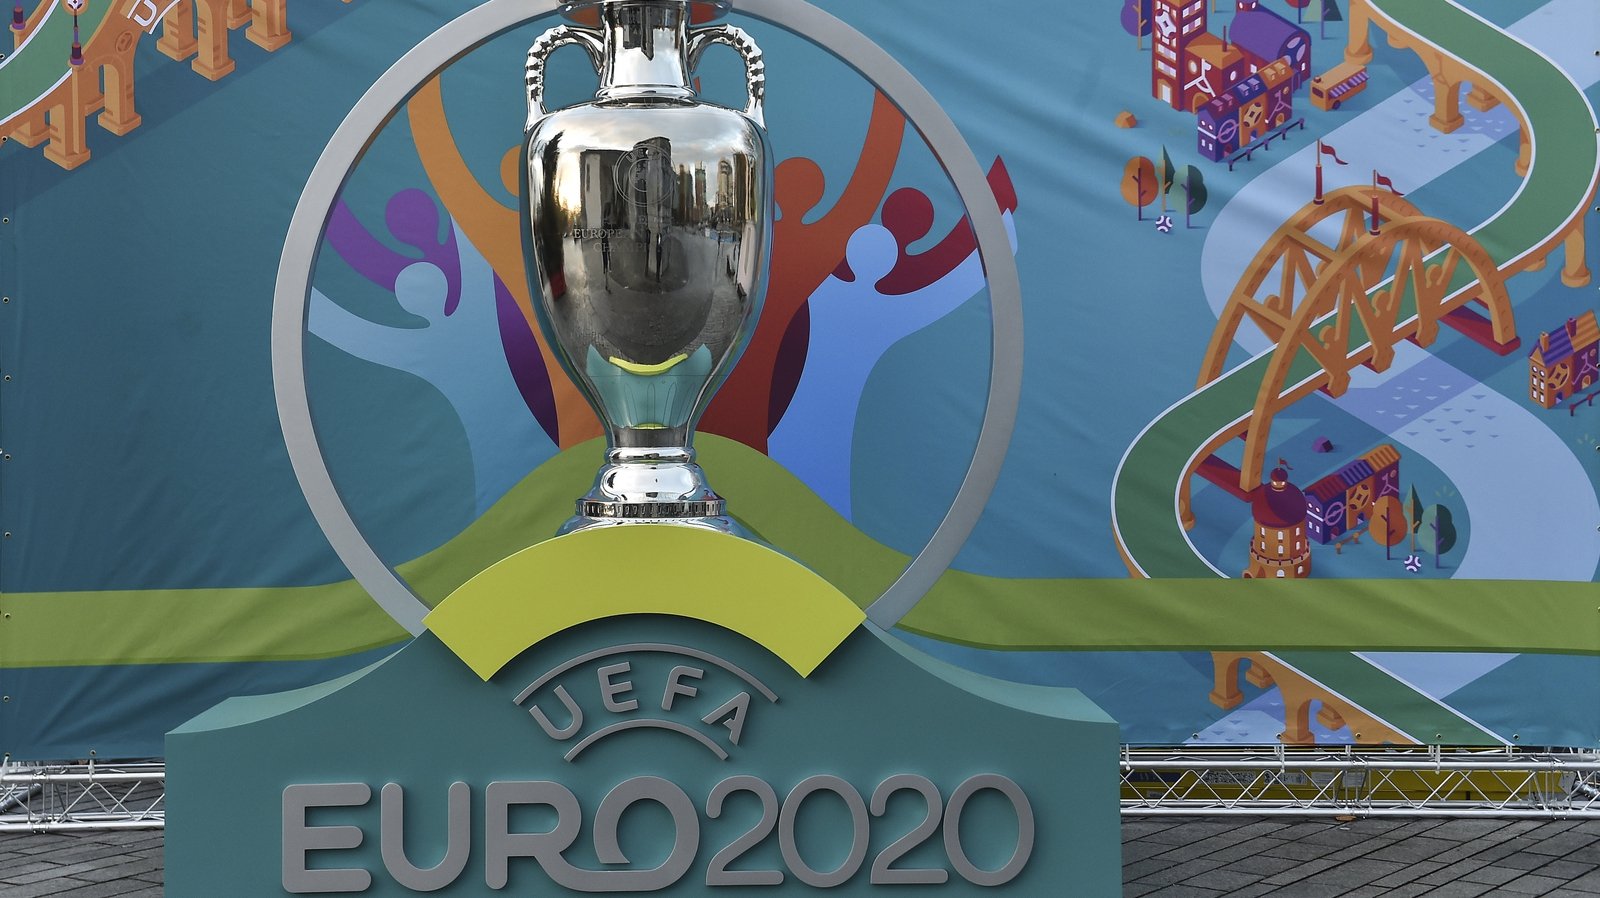 Kết quả hình ảnh cho EURO 2020 postpone